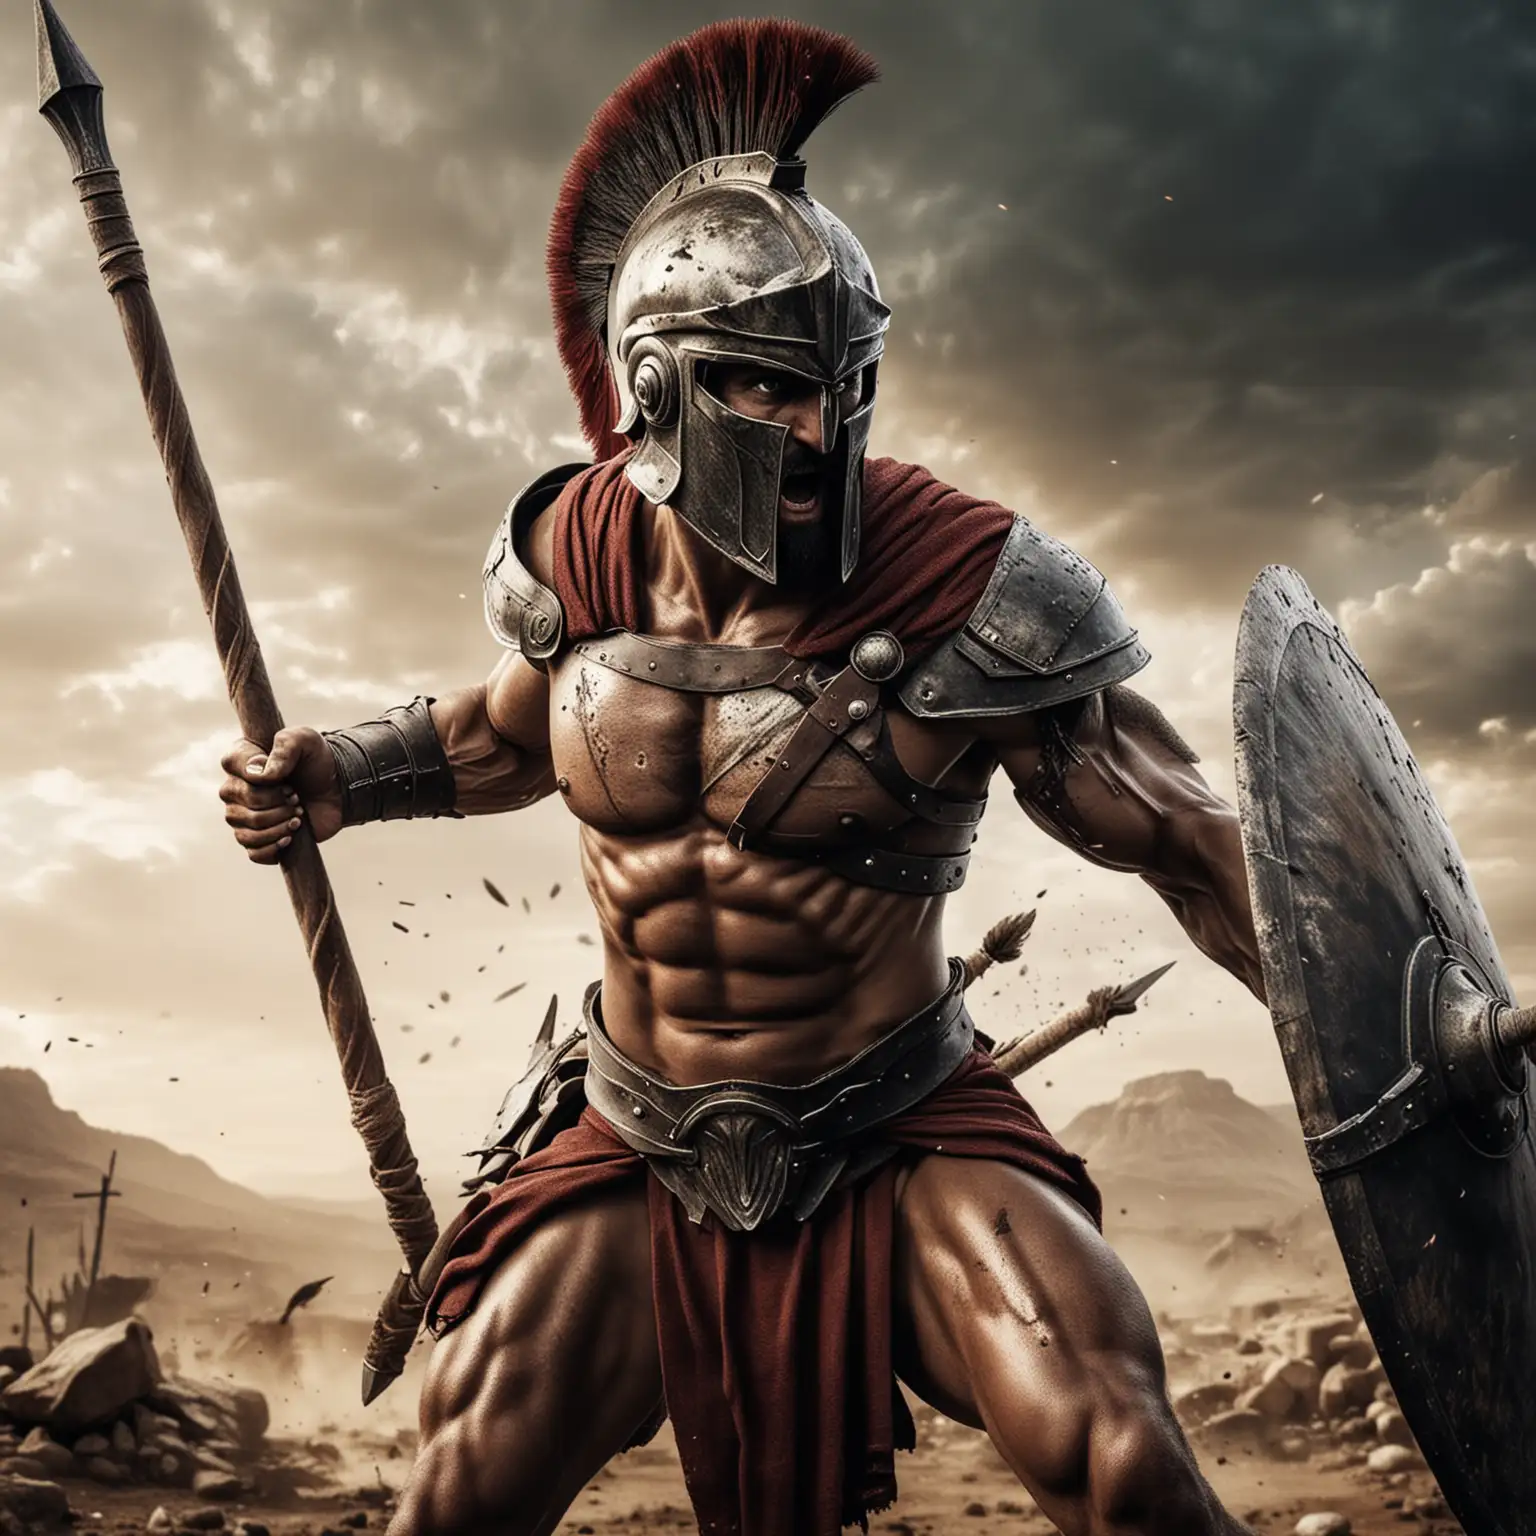 Spartan Warrior with Spear in Intense Battle Stance